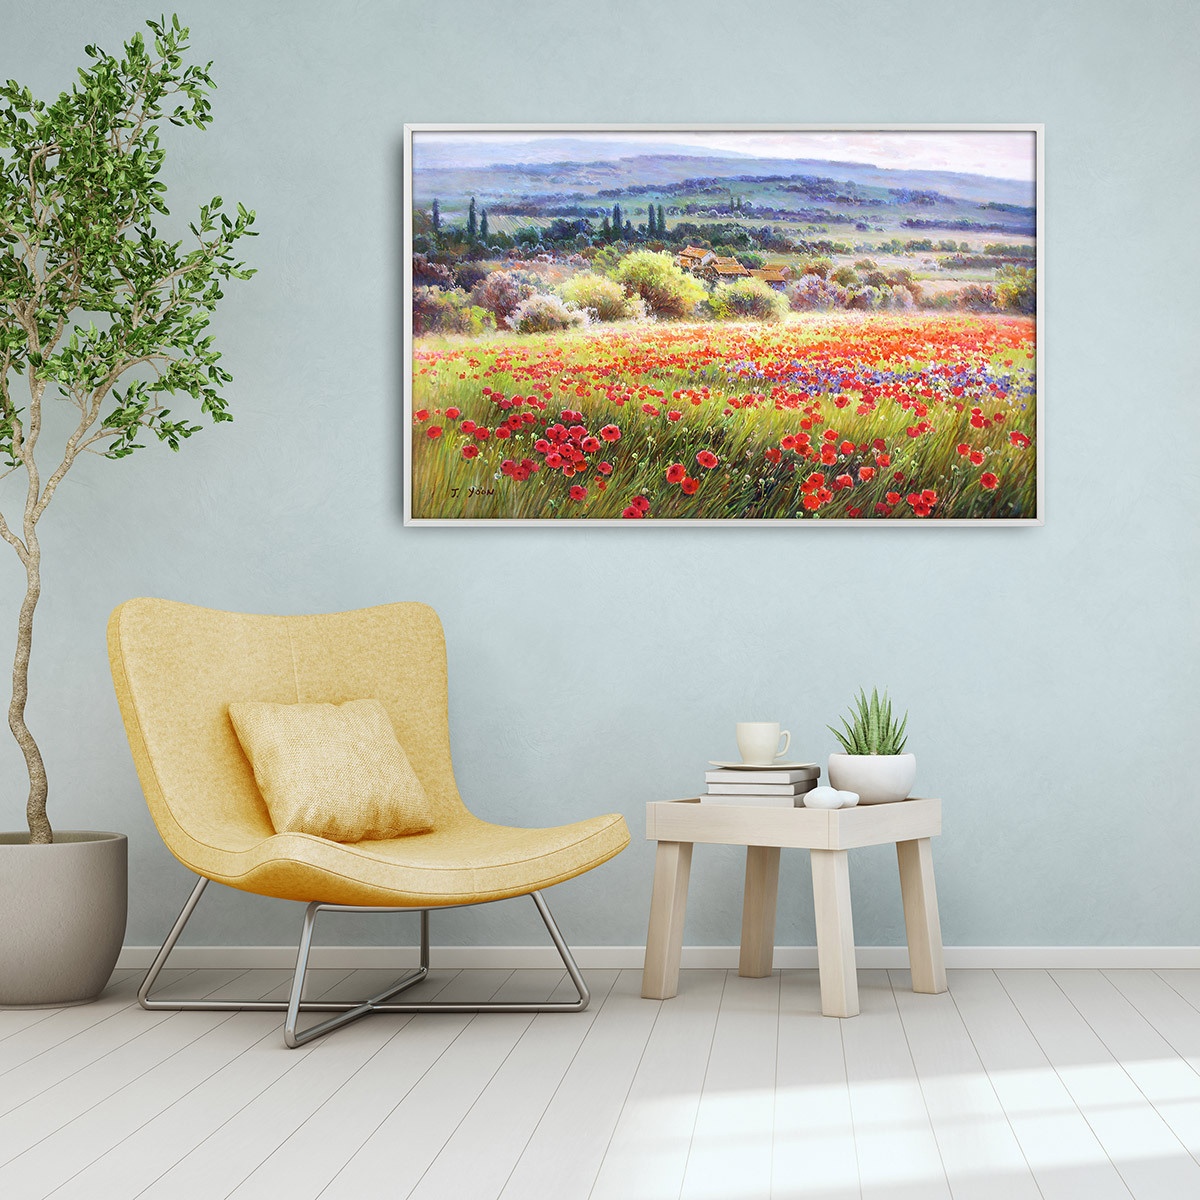 지클레 그림 액자 91x61cm - 토스카나 풍경